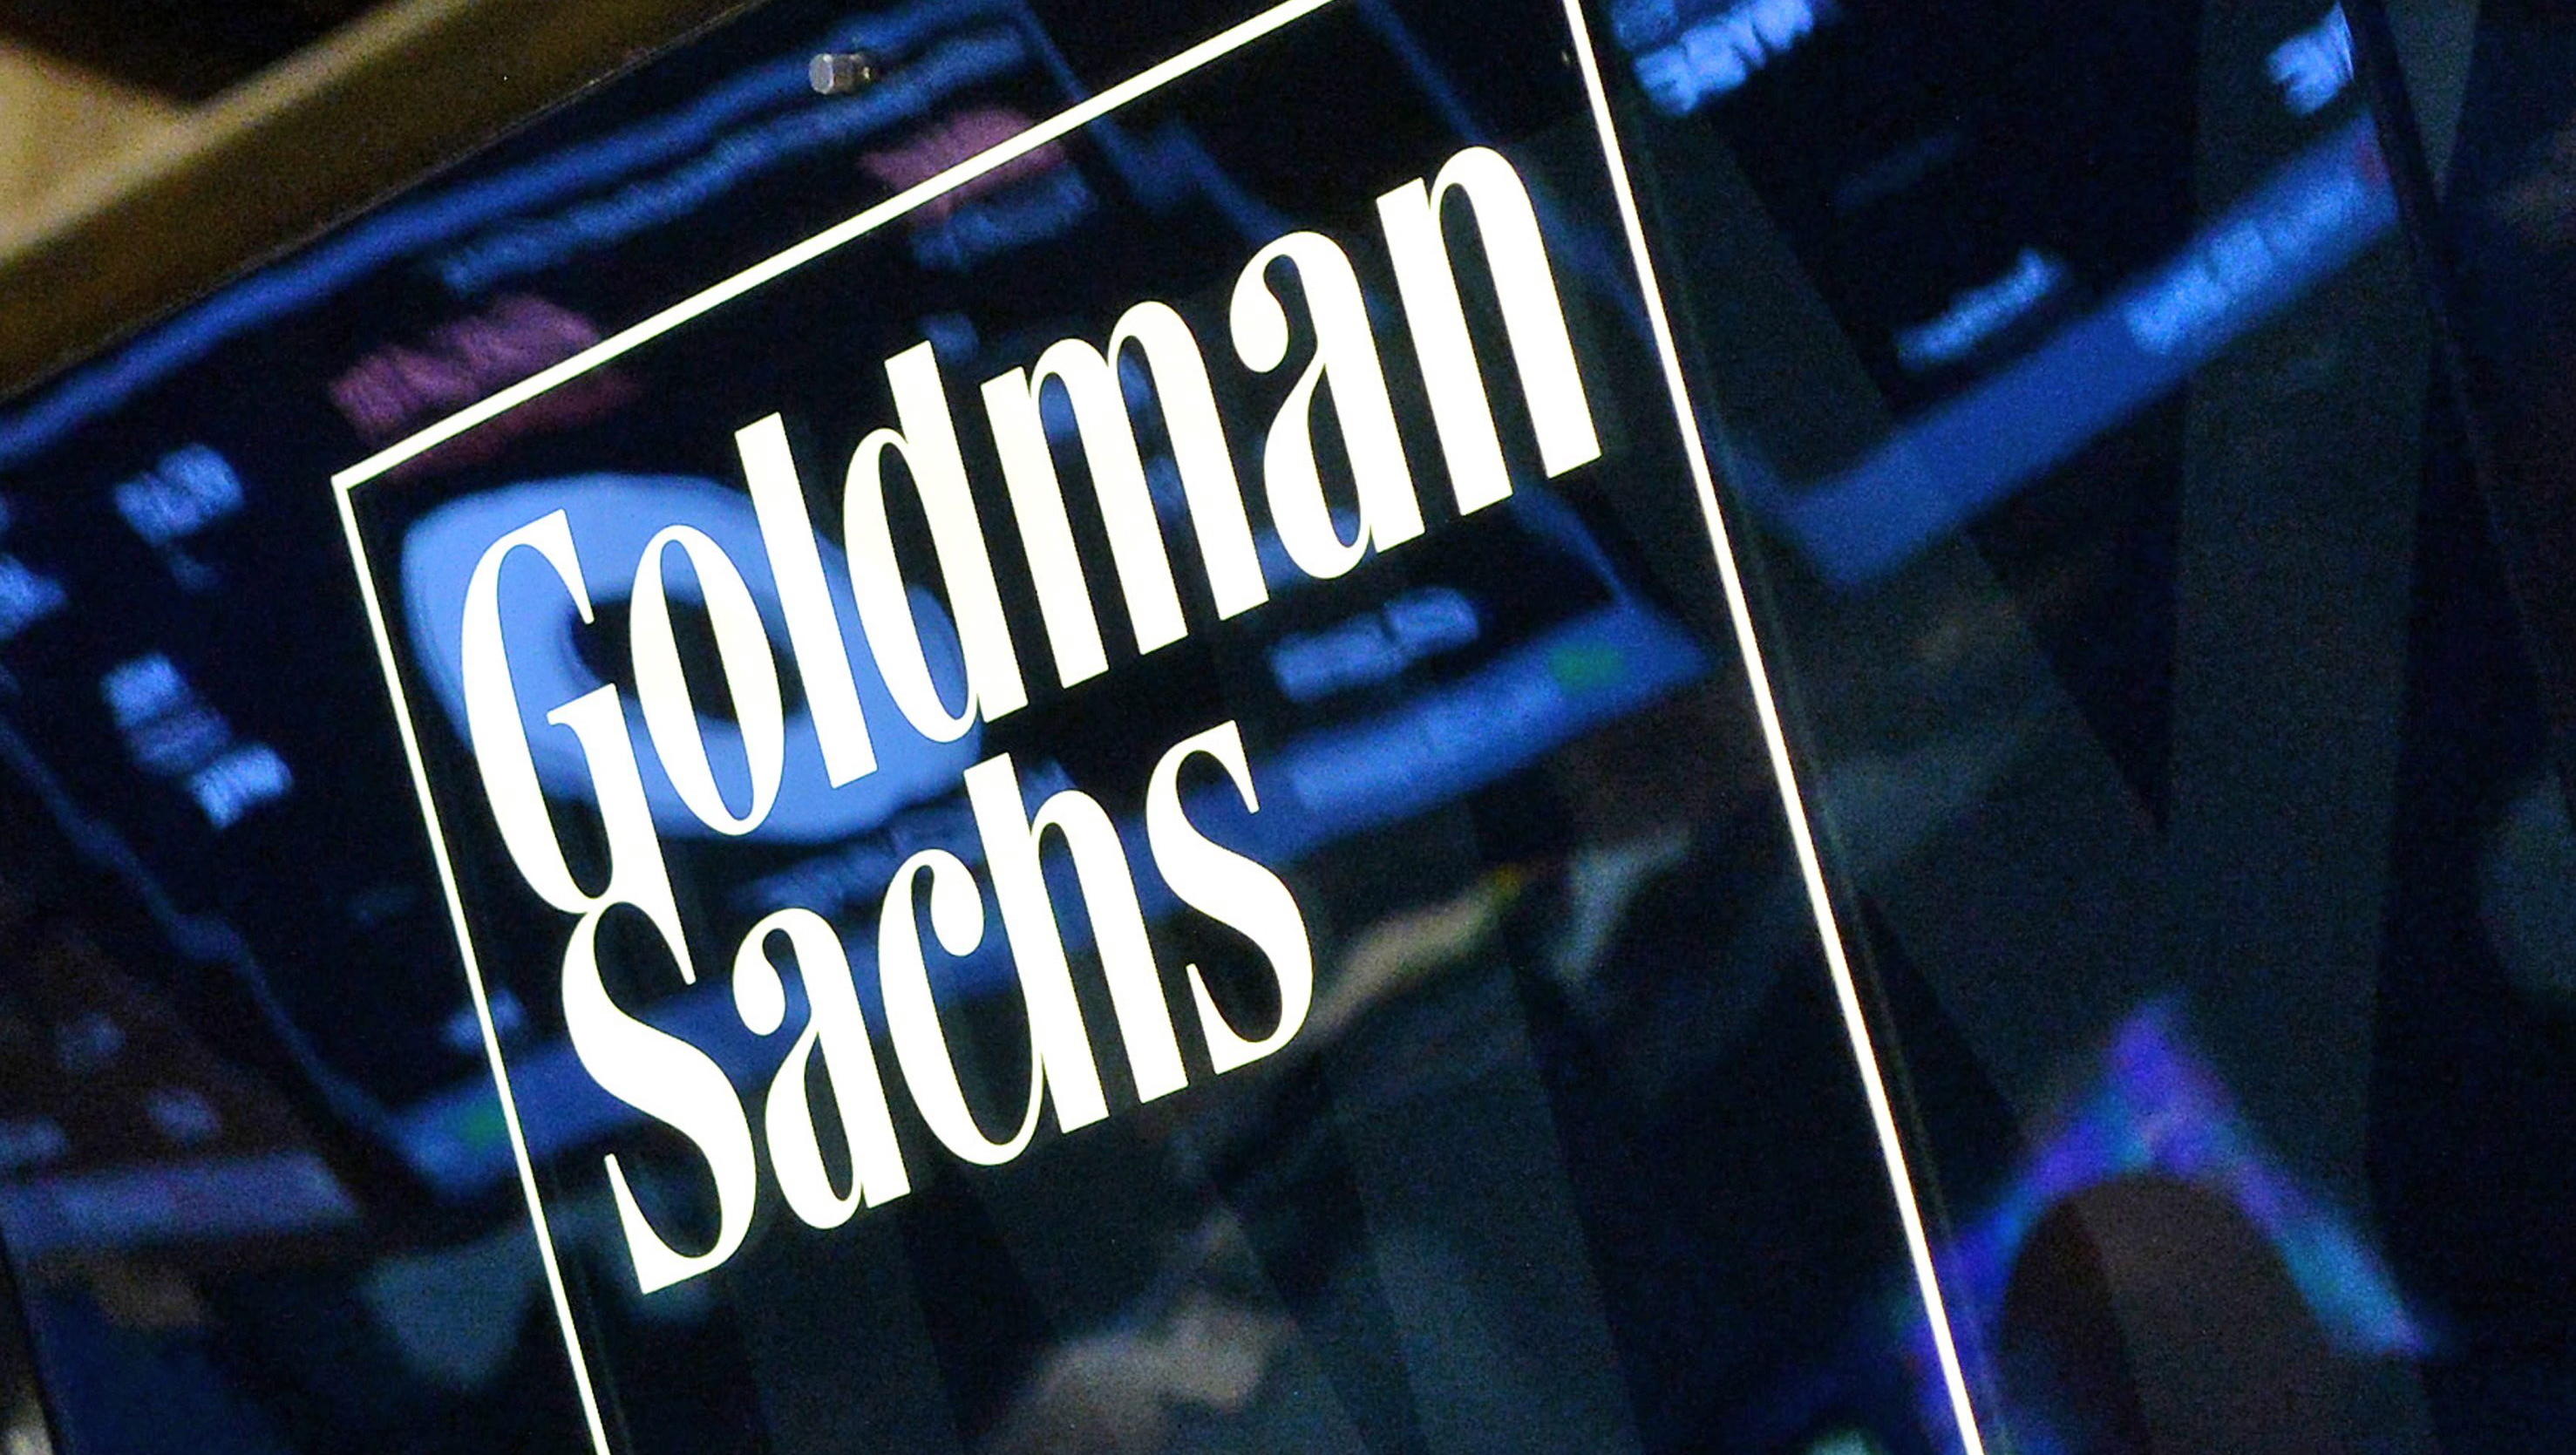 Goldman Sachs erwartet starke Erholung der Öl-Nachfrage